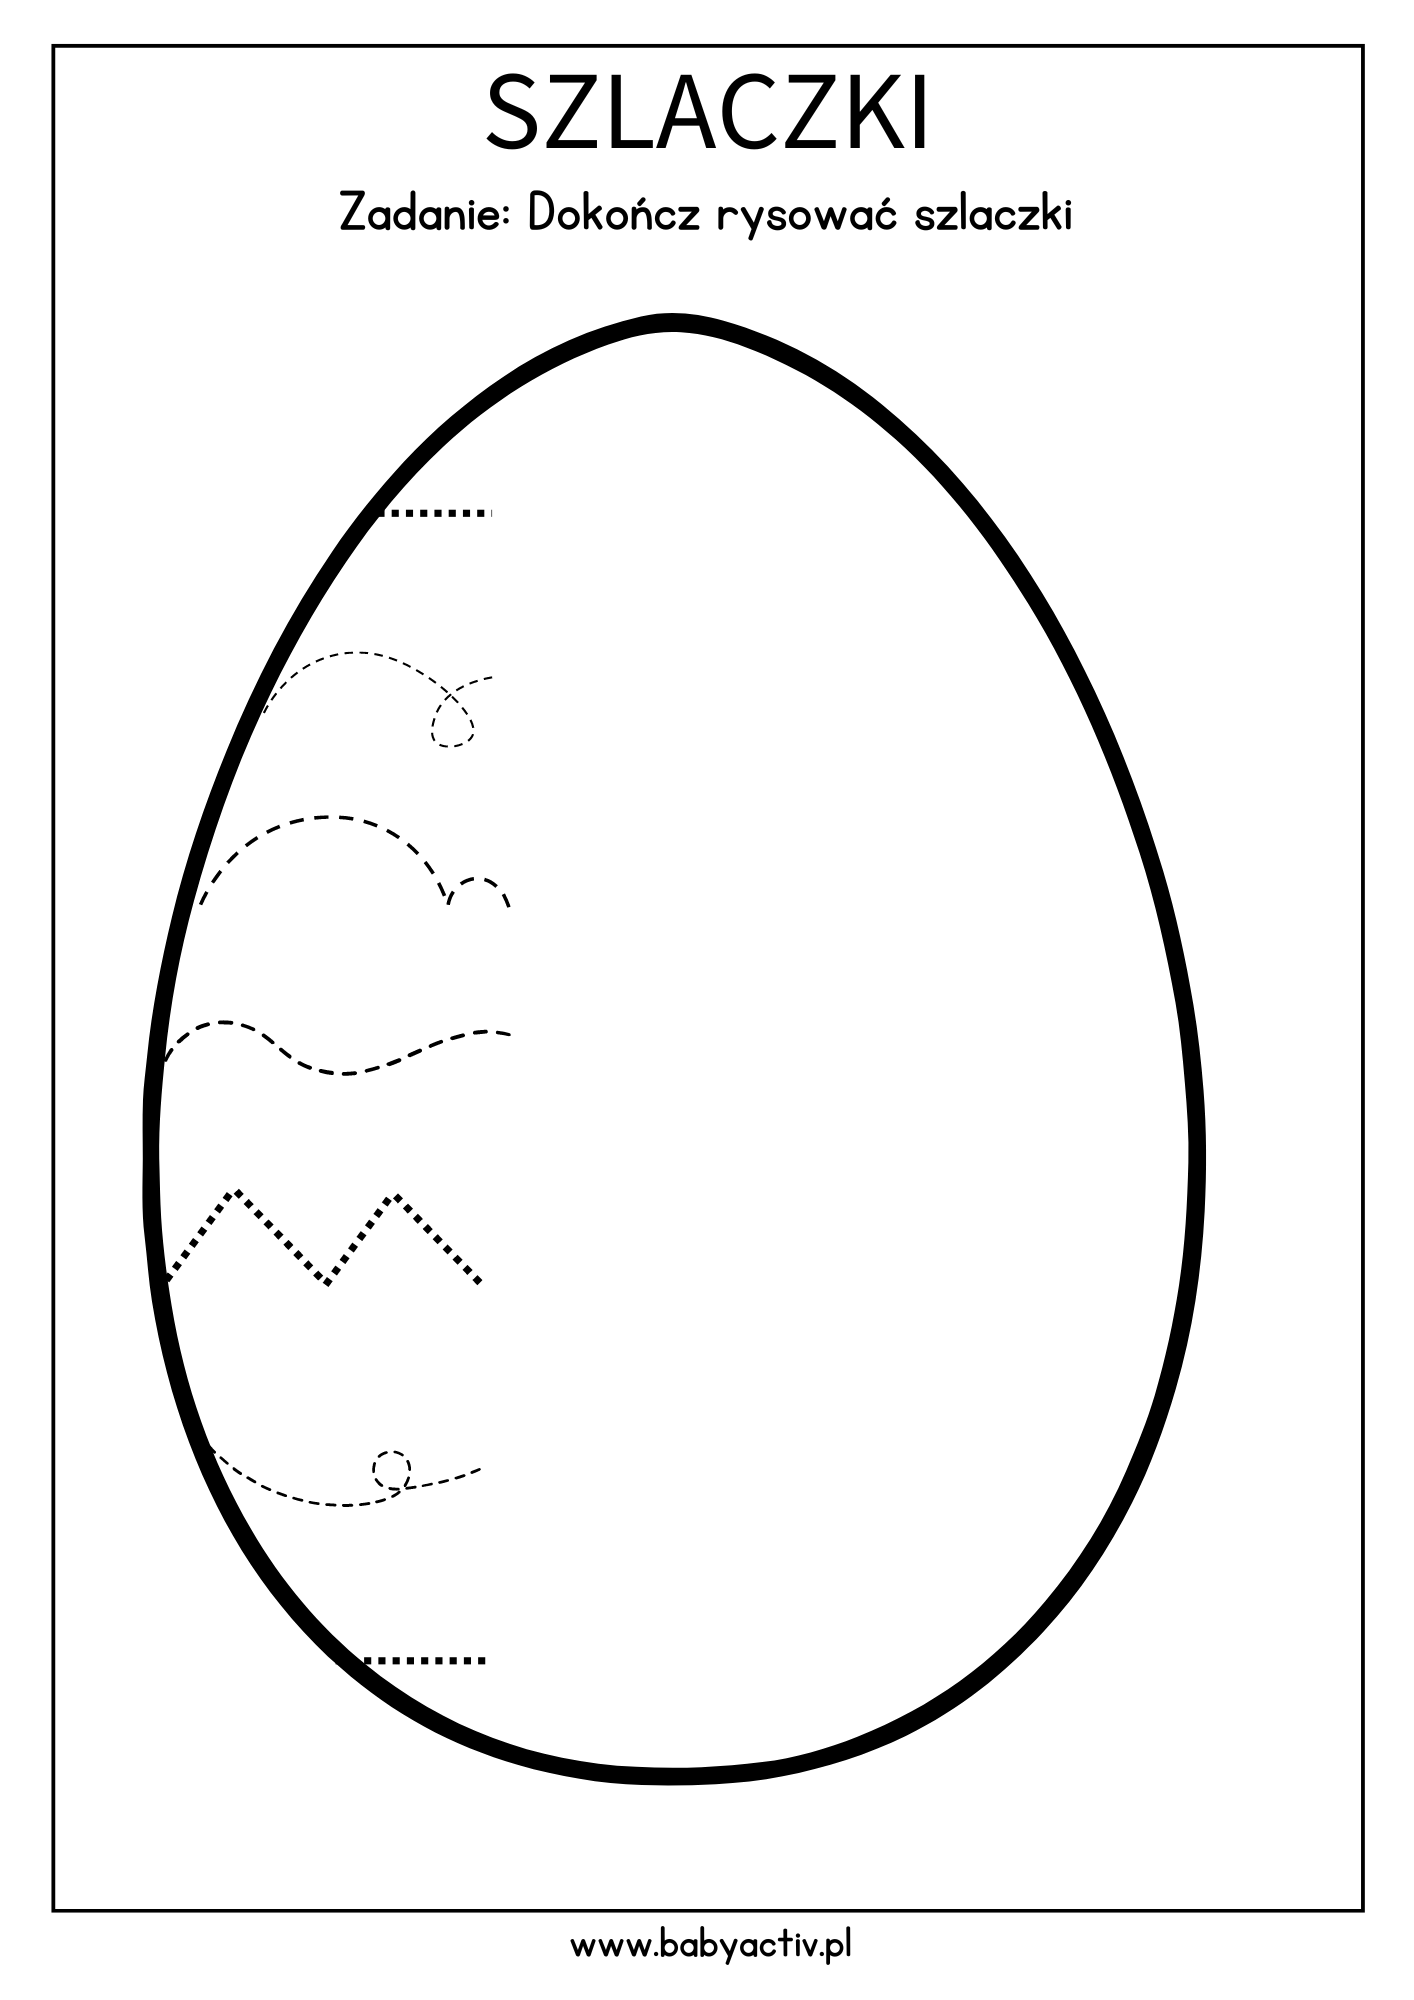 Szlaczki - jajko wielkanocne